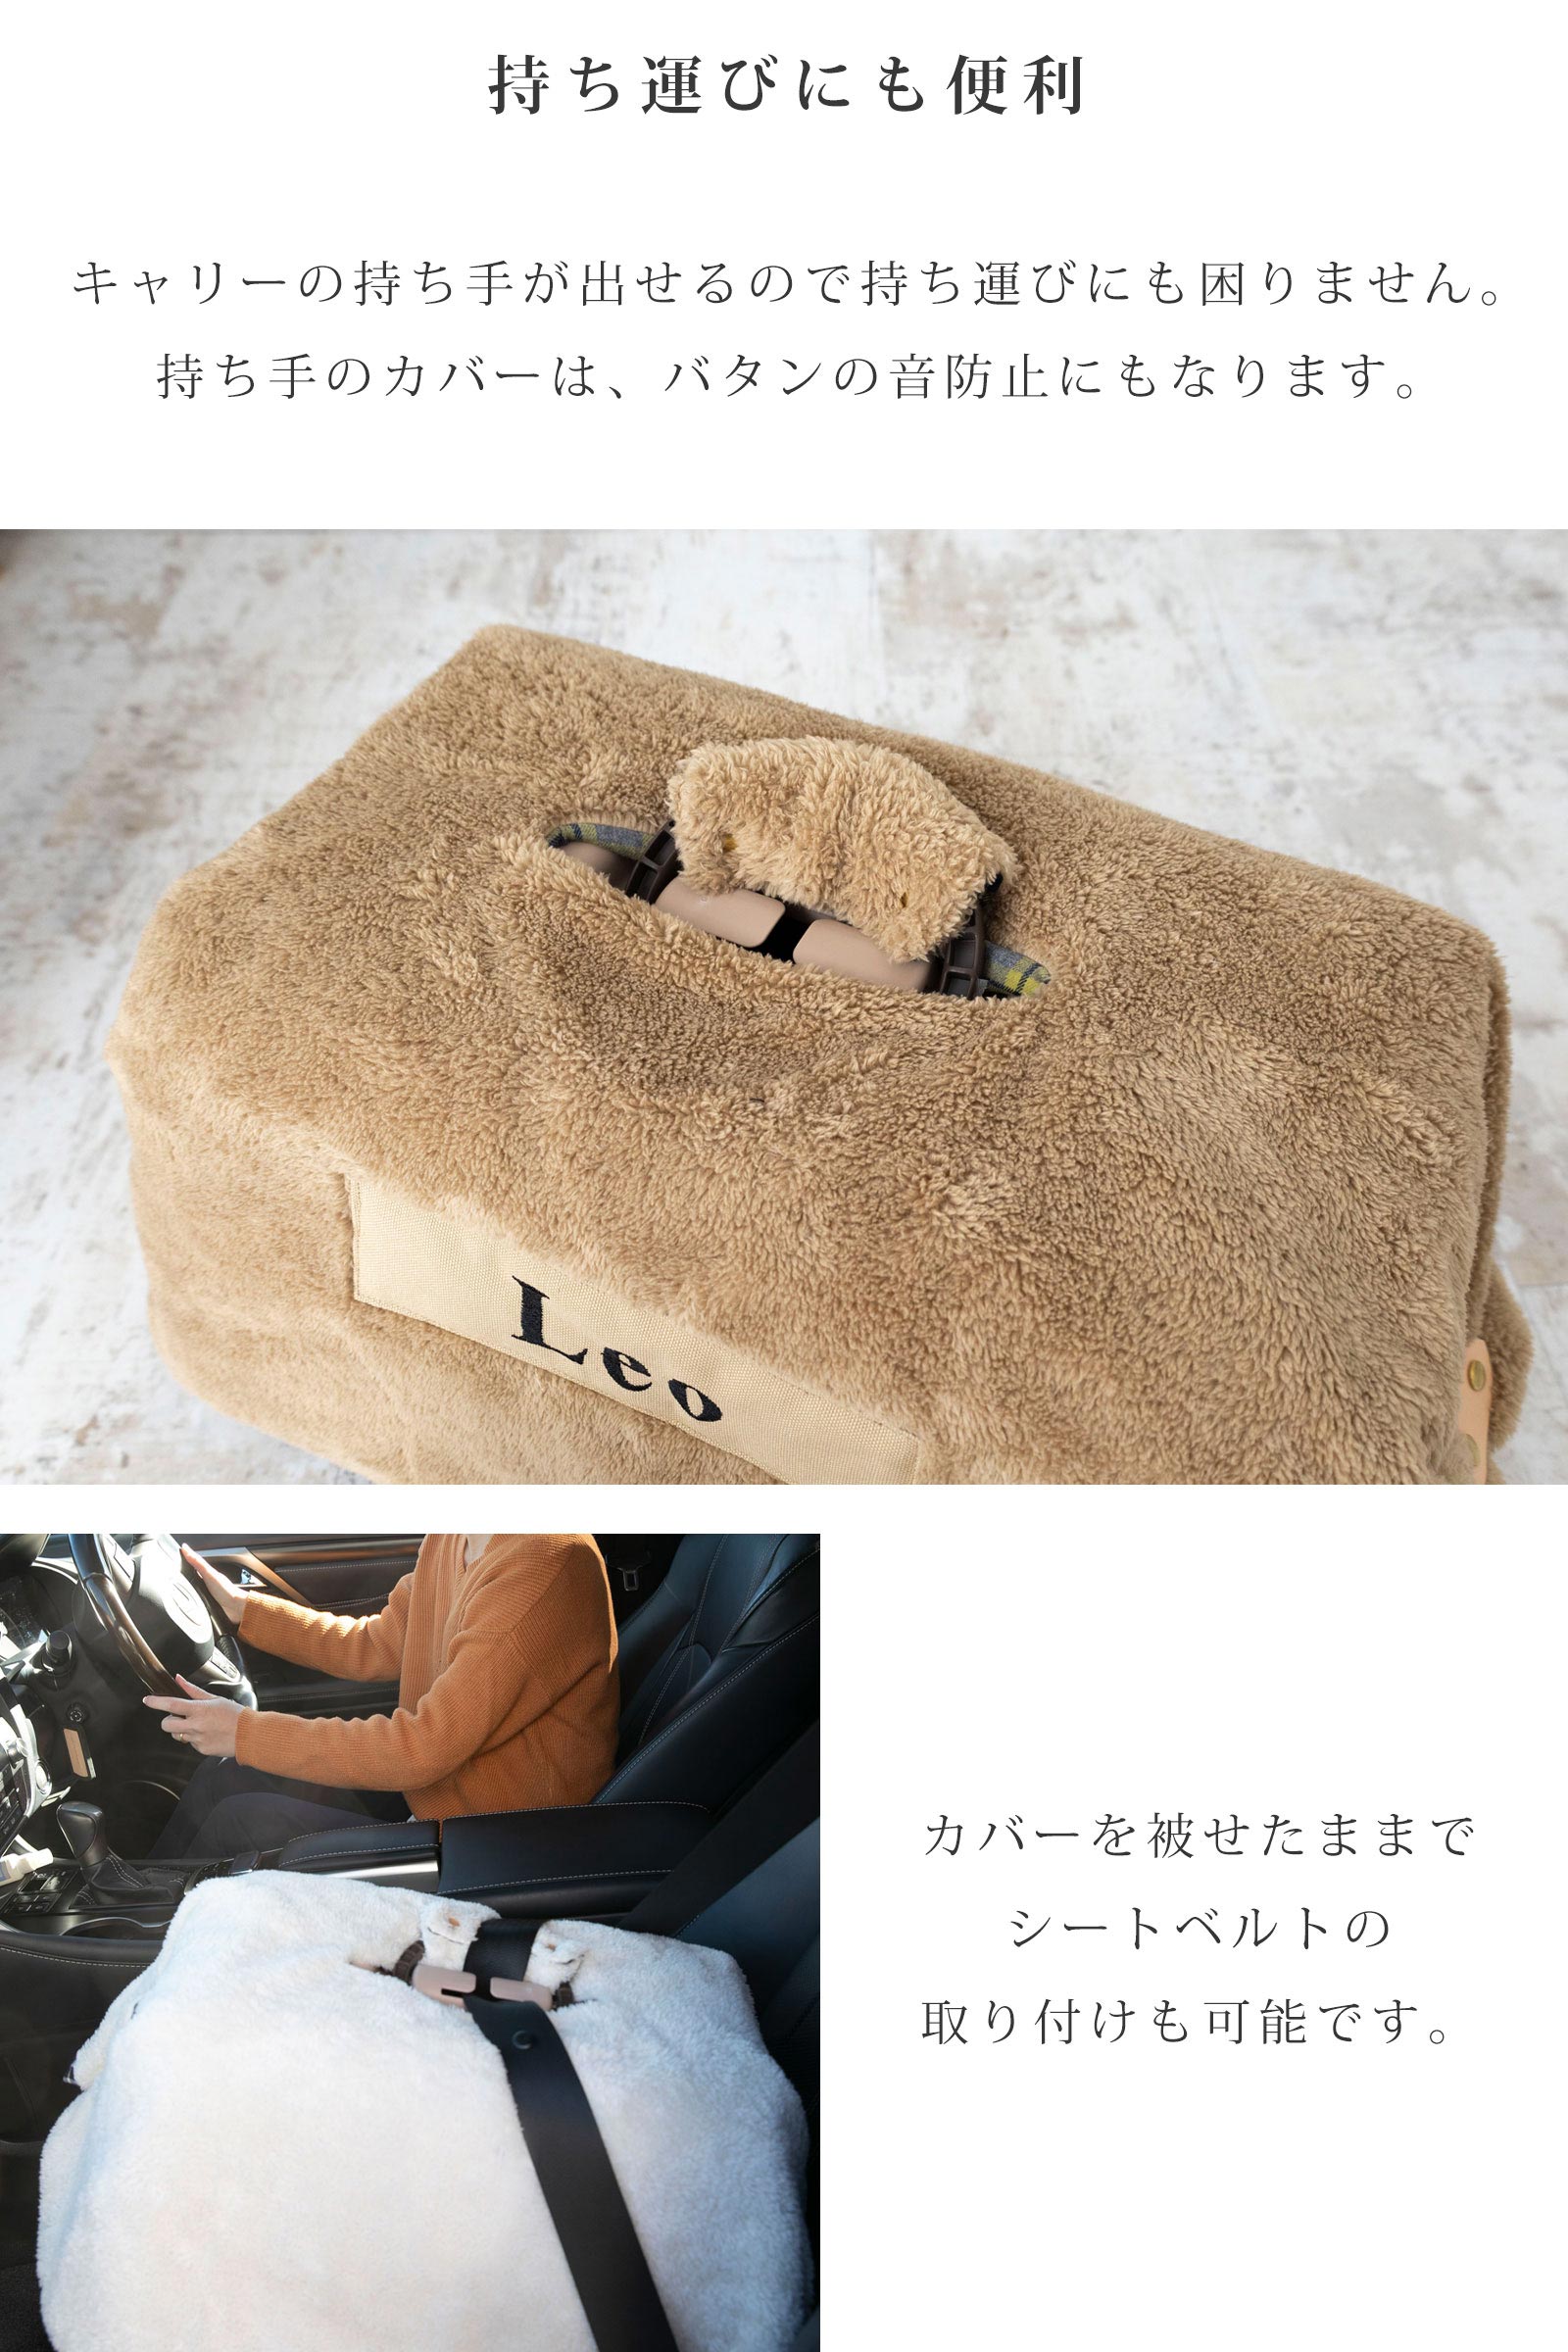 日本製 キャリー用カバー キャリーケース 犬 猫 防寒 冬 持ち運びにも便利